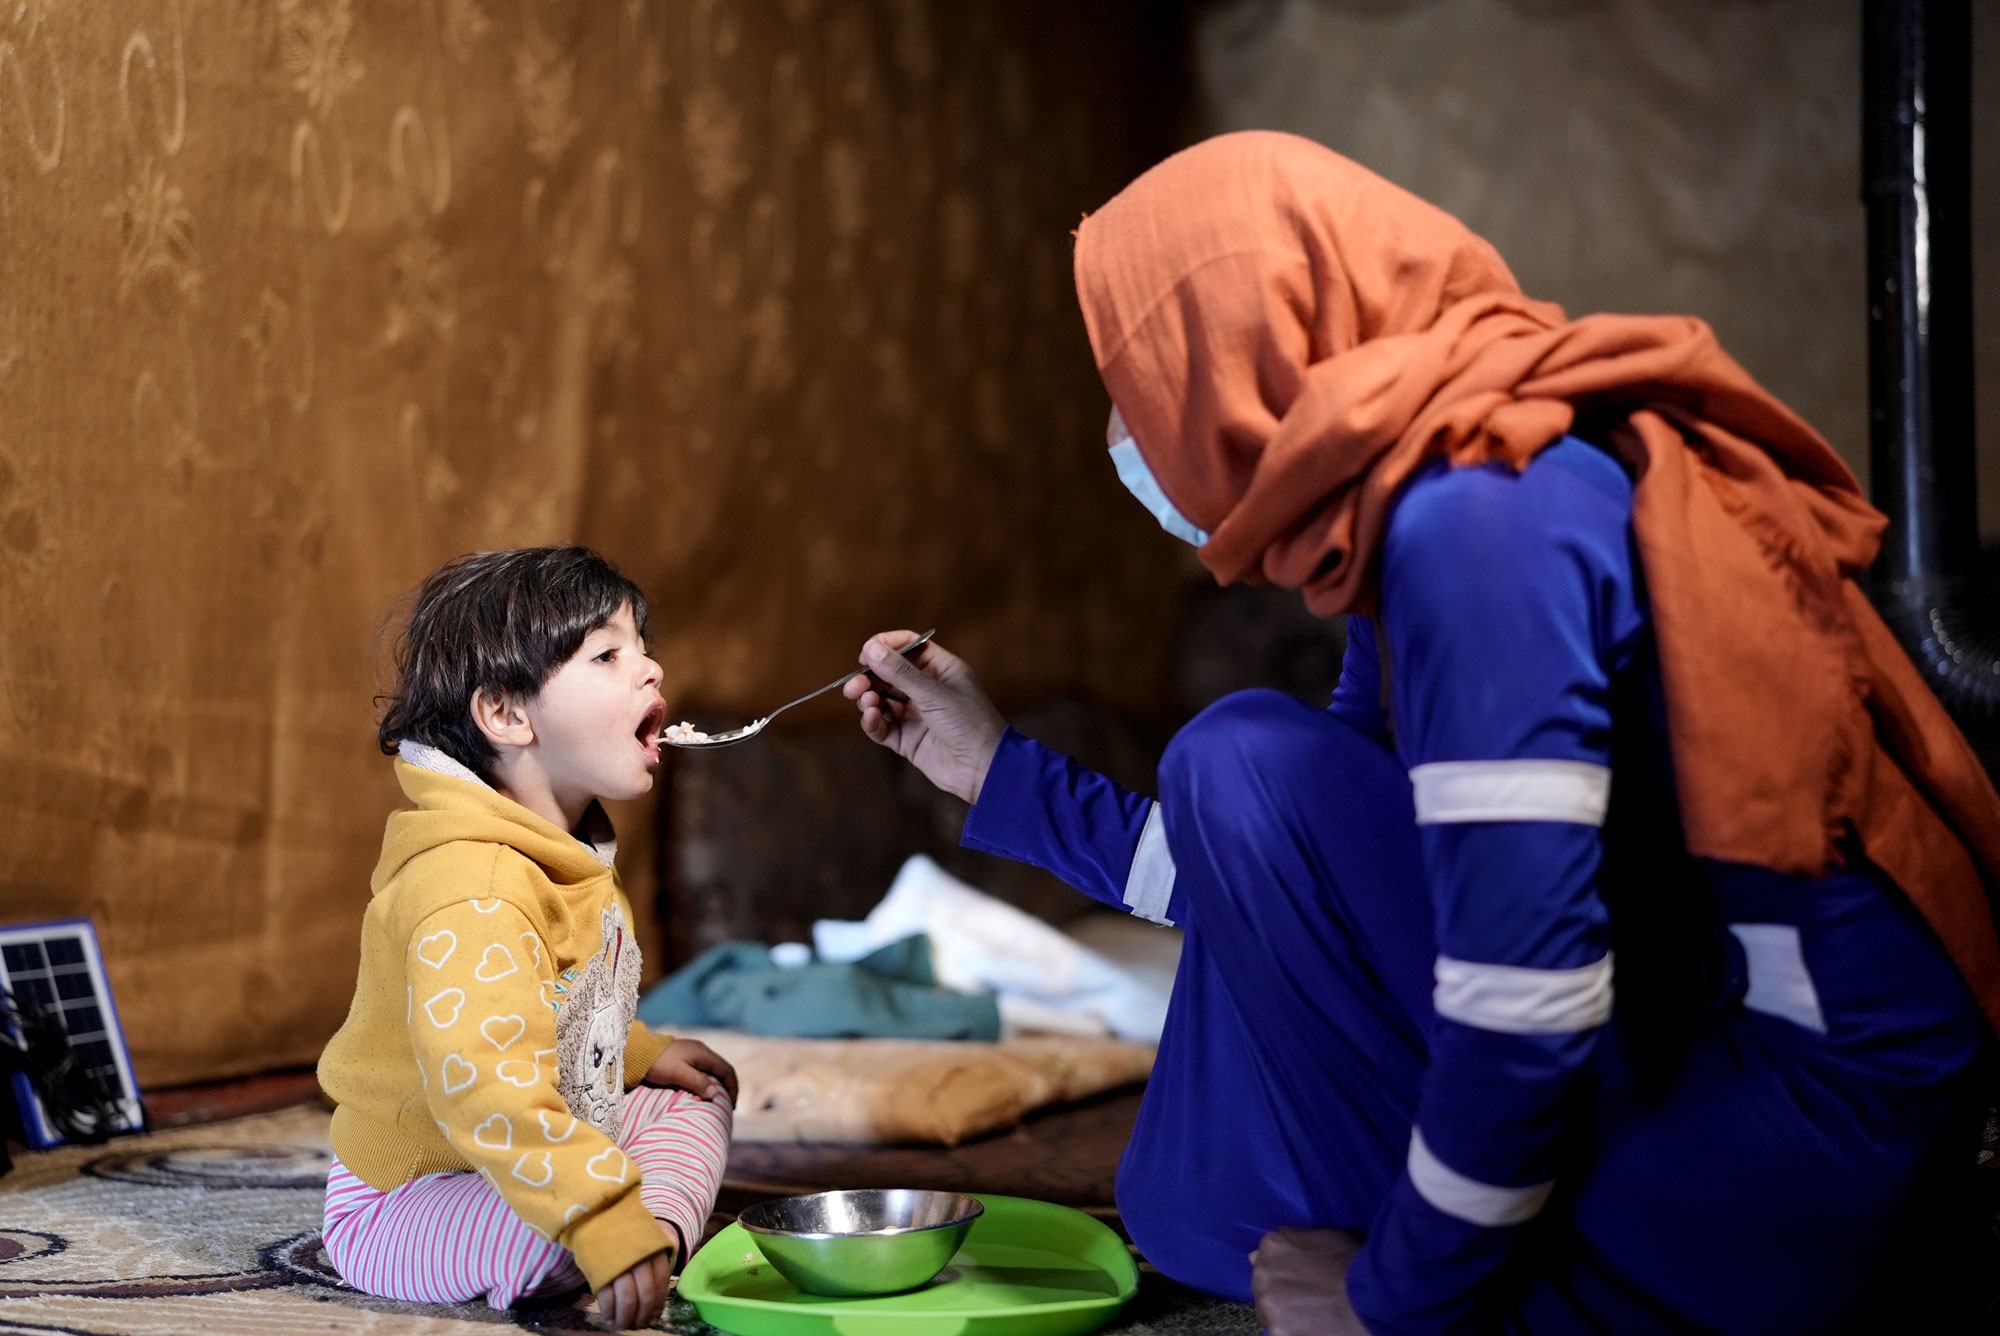 العديد من العائلات في لبنان غير قادرة على تحمل تكاليف الرعاية الصحية الأساسية لأطفالها.